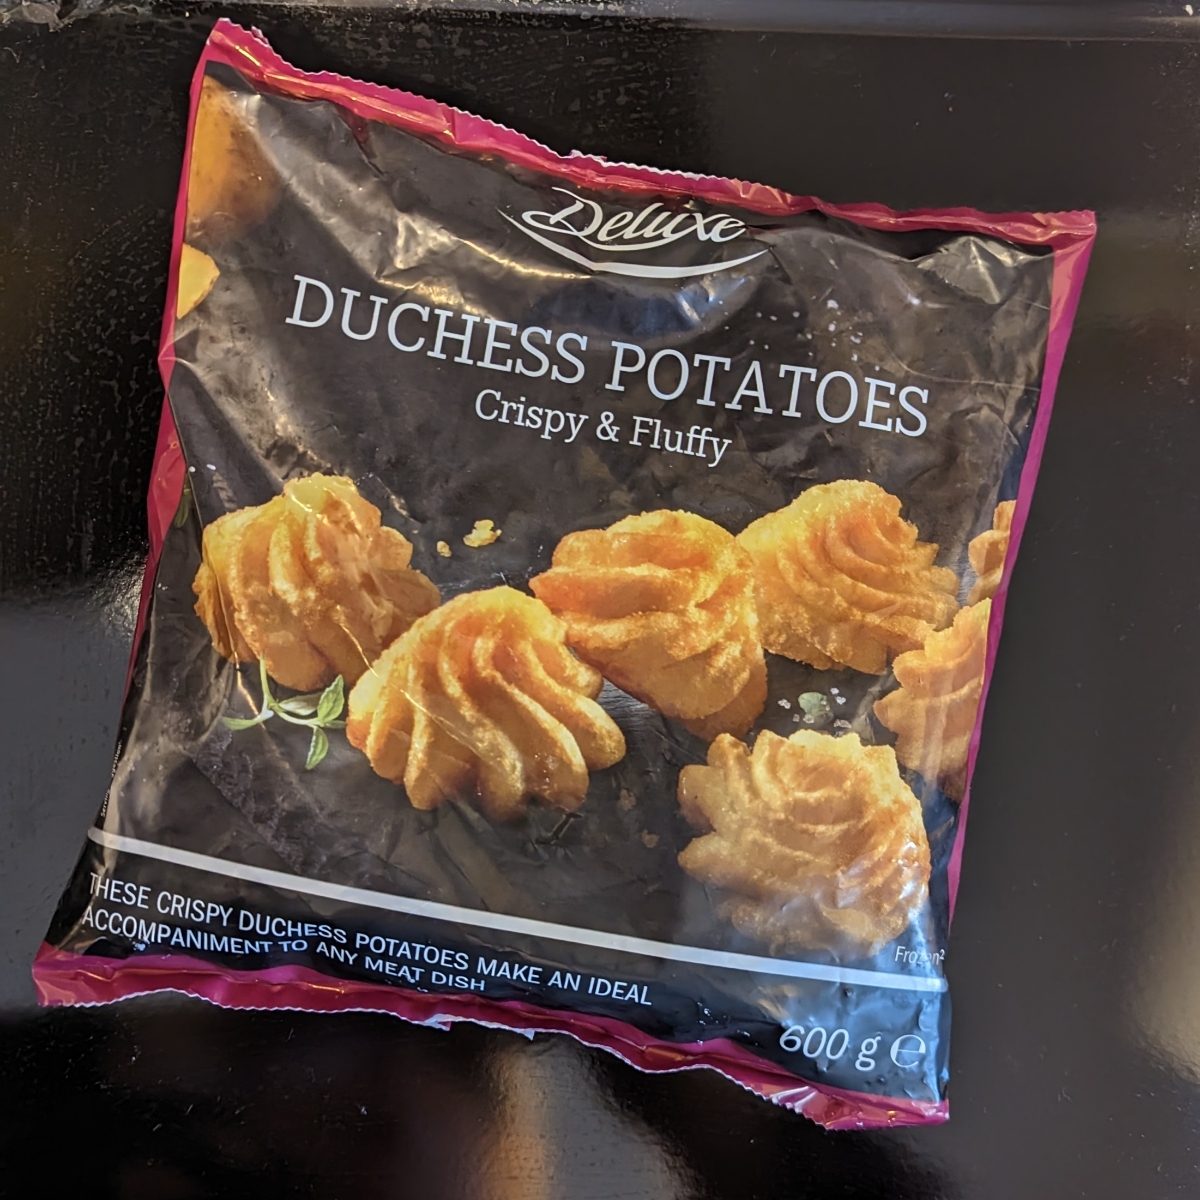 Recensioni su Duchess potatoes di Deluxe | abillion